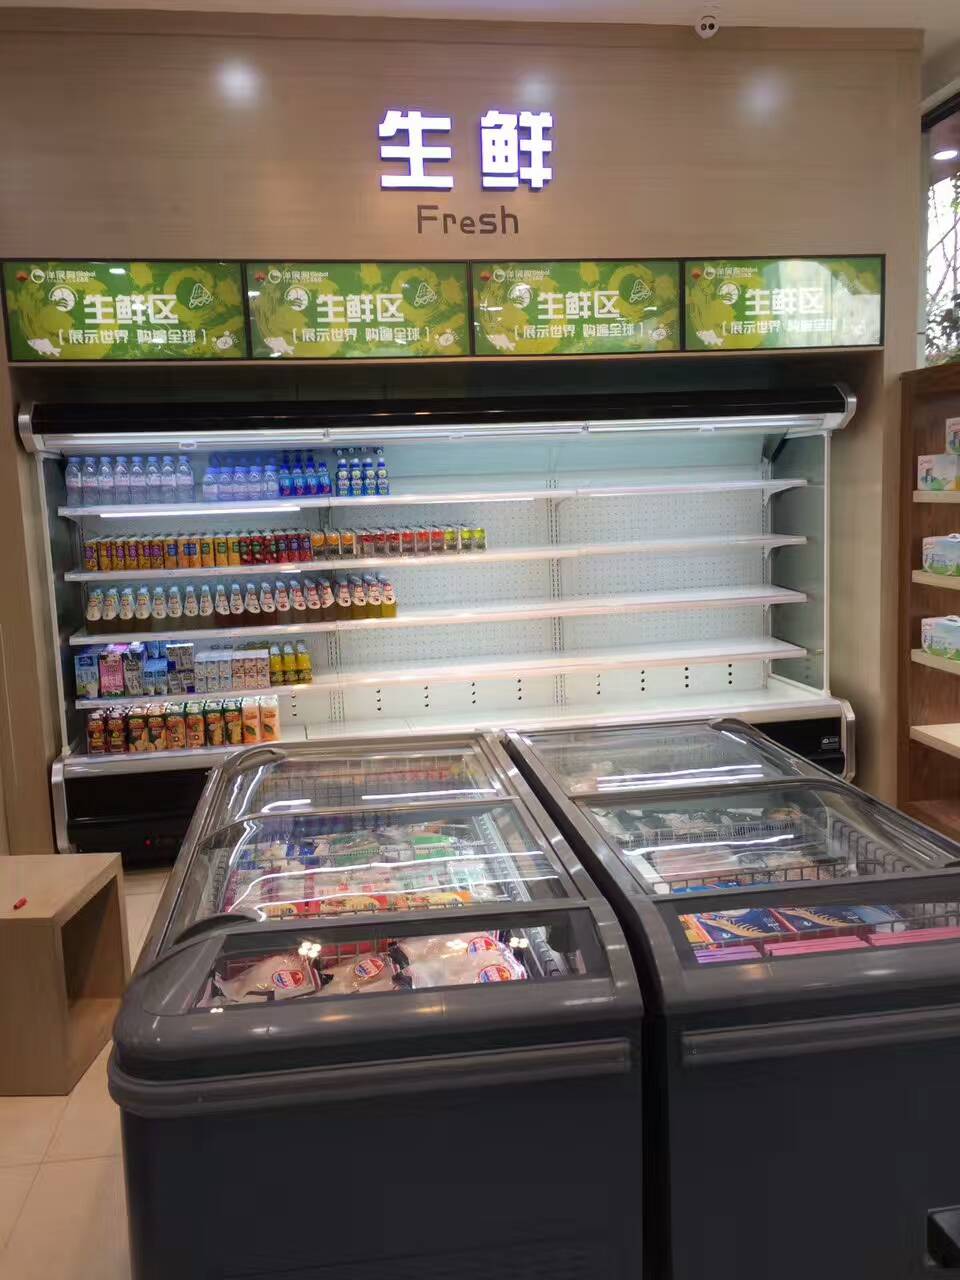 超市岛柜供应商 重庆超市**冻货岛柜的价格图片 冷柜厂家直销